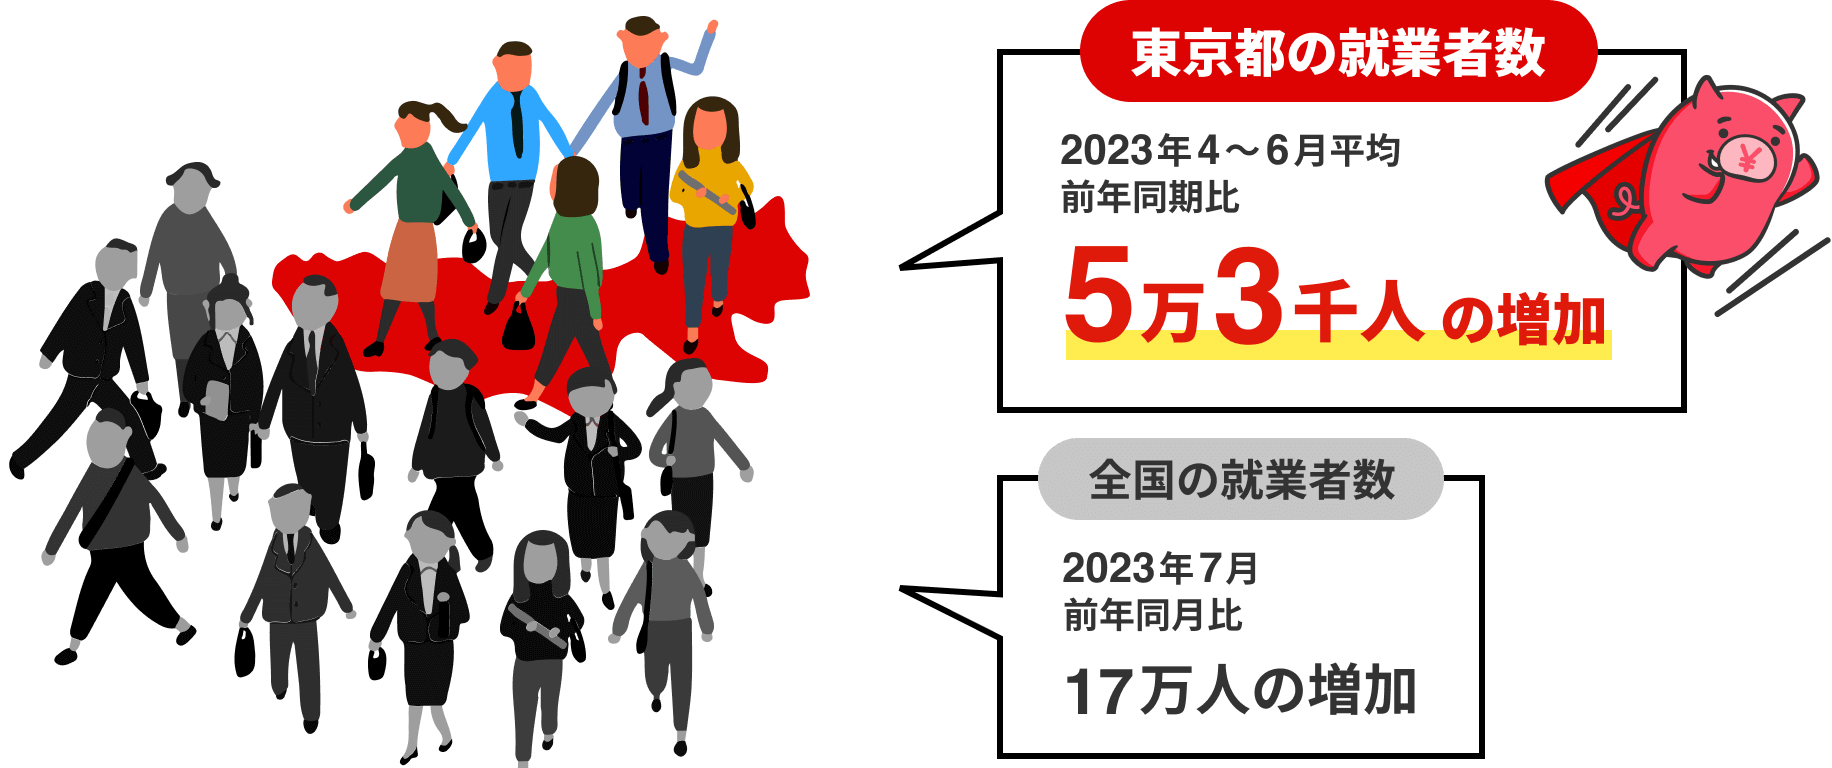 東京都の就業者数 5万3千人の増加